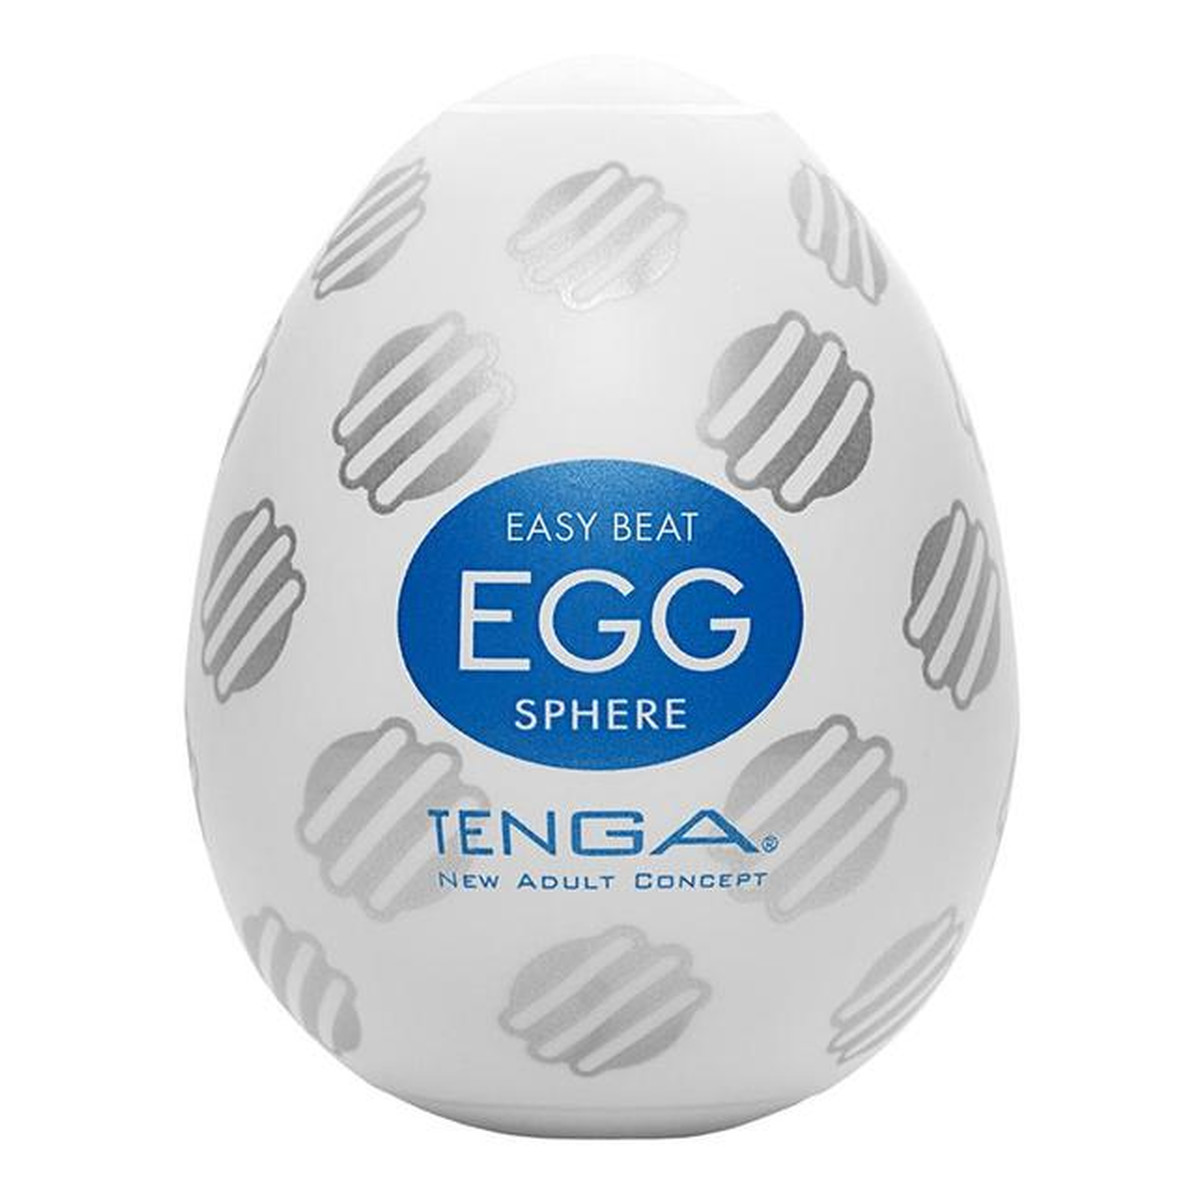 Tenga Easy beat egg sphere jednorazowy masturbator w kształcie jajka